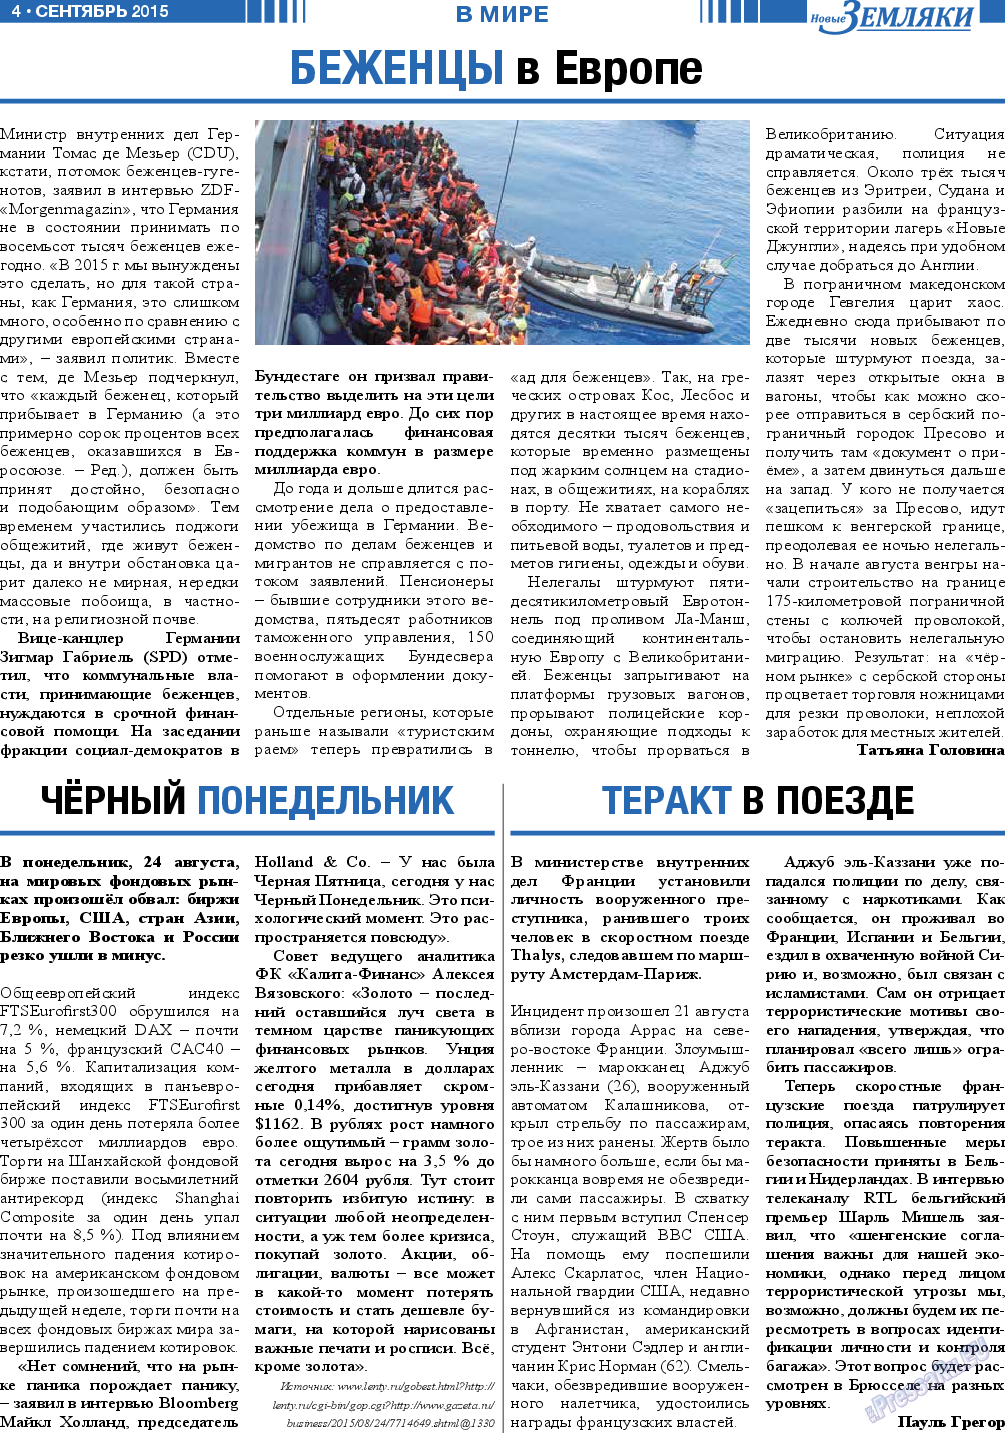 Новые Земляки, газета. 2015 №9 стр.4